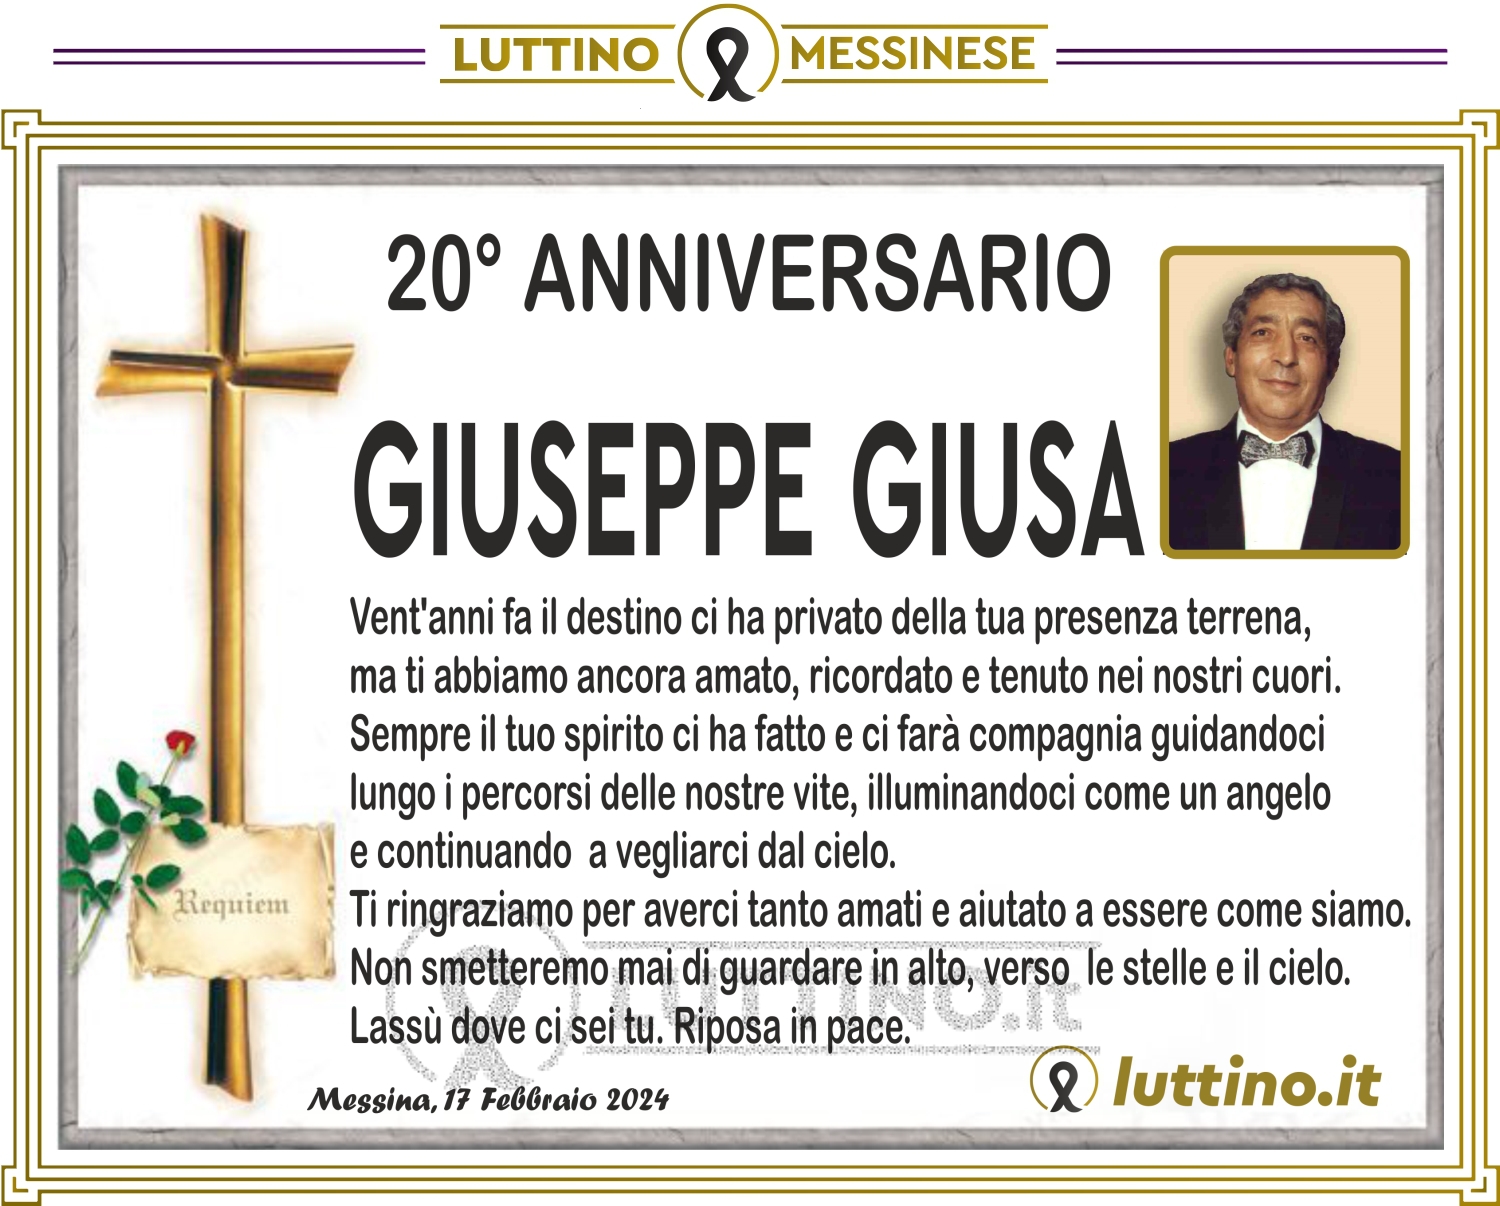 Giuseppe Giusa